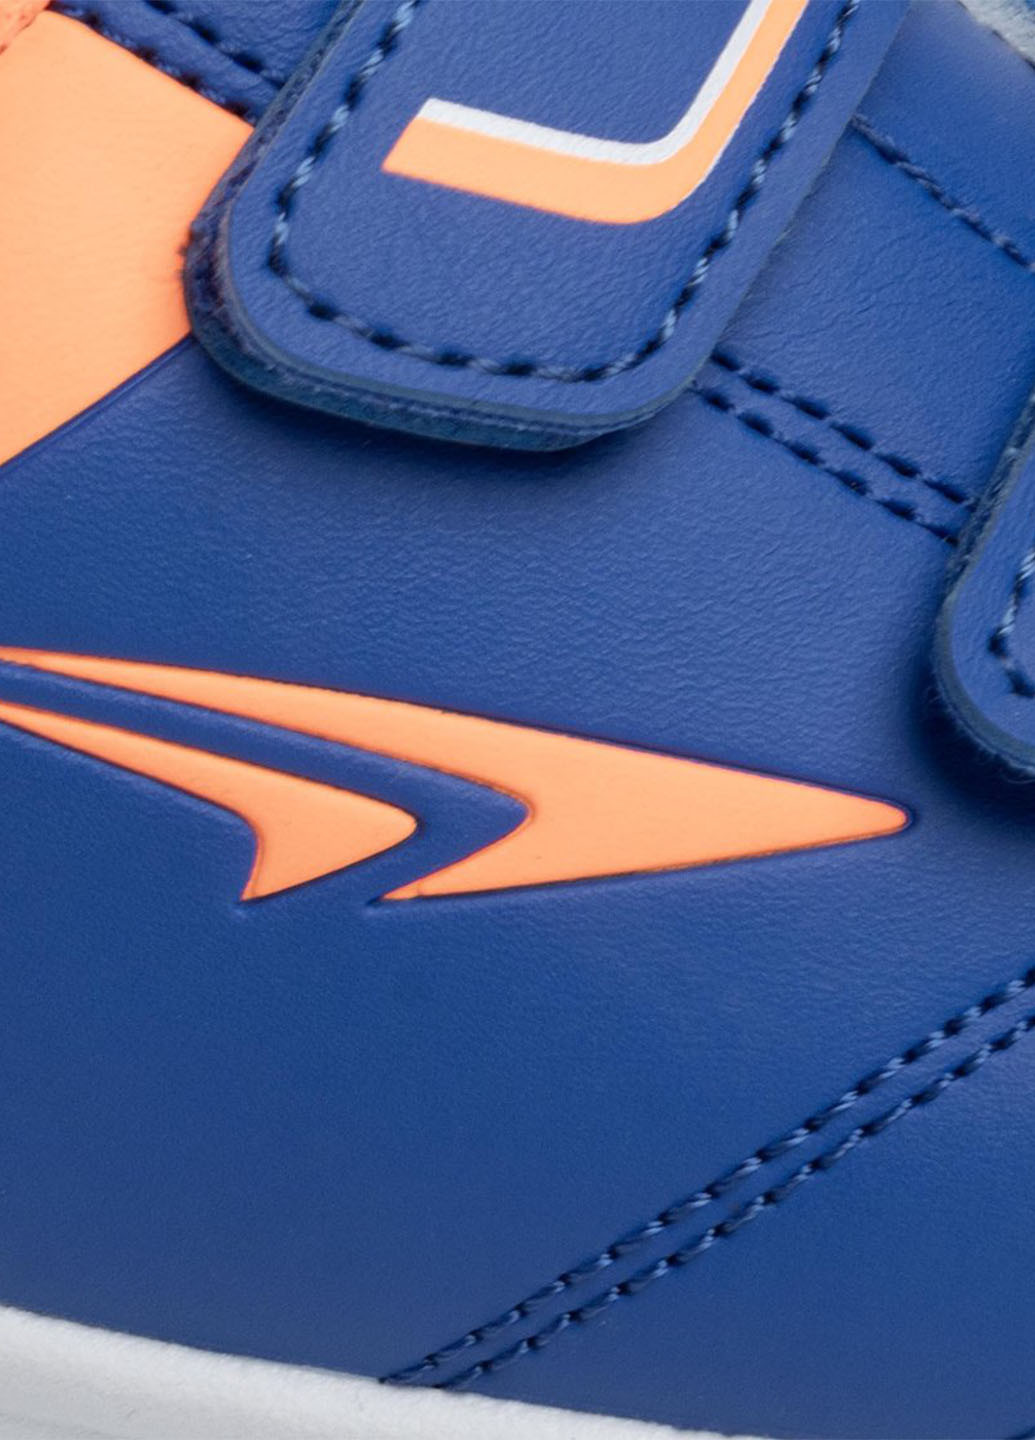 Синій Осінні кросівки Sprandi CP70-18336